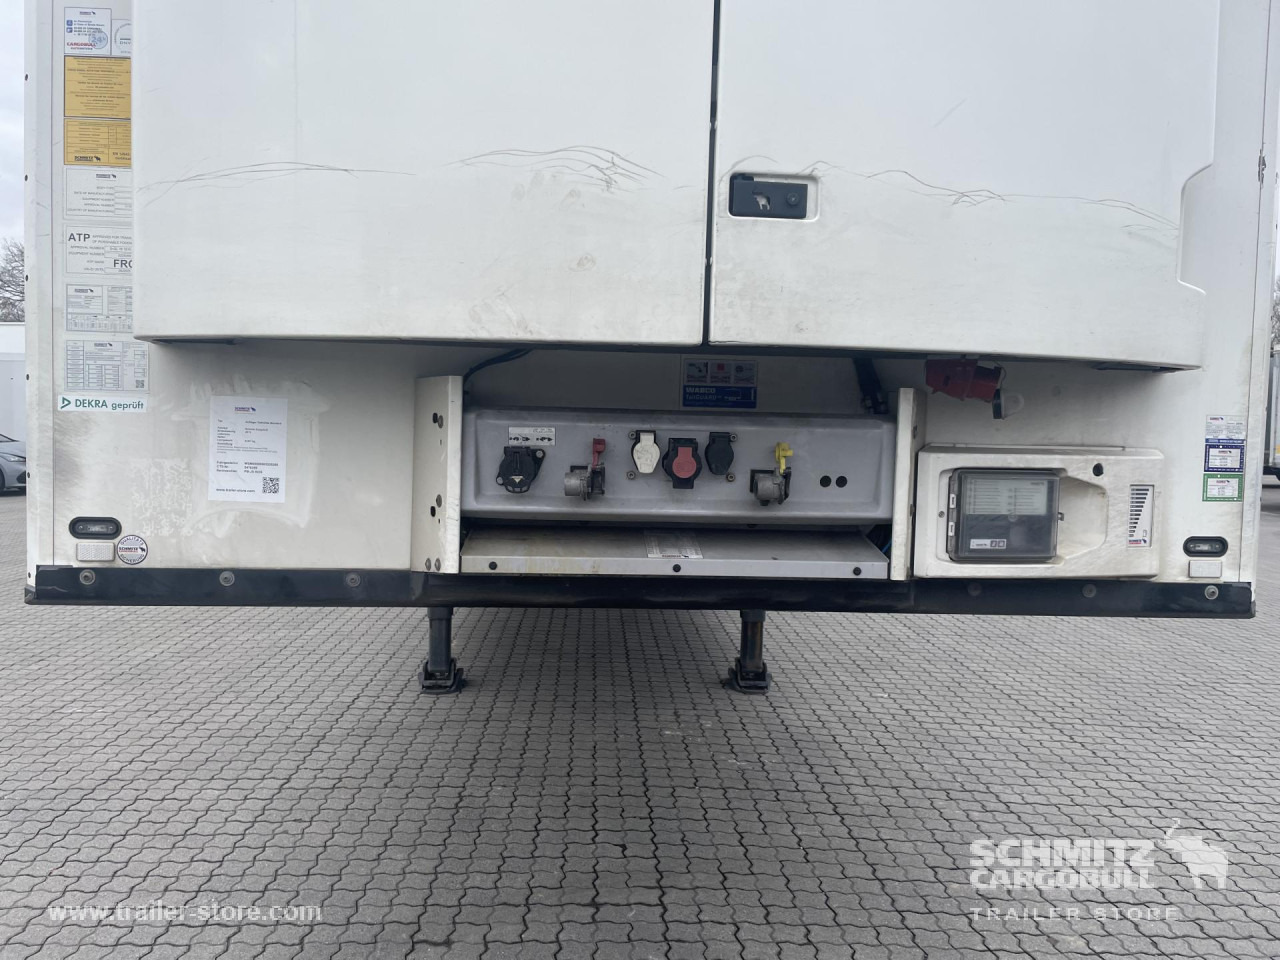 Isothermal semi-trailer SCHMITZ Auflieger Tiefkühler Standard